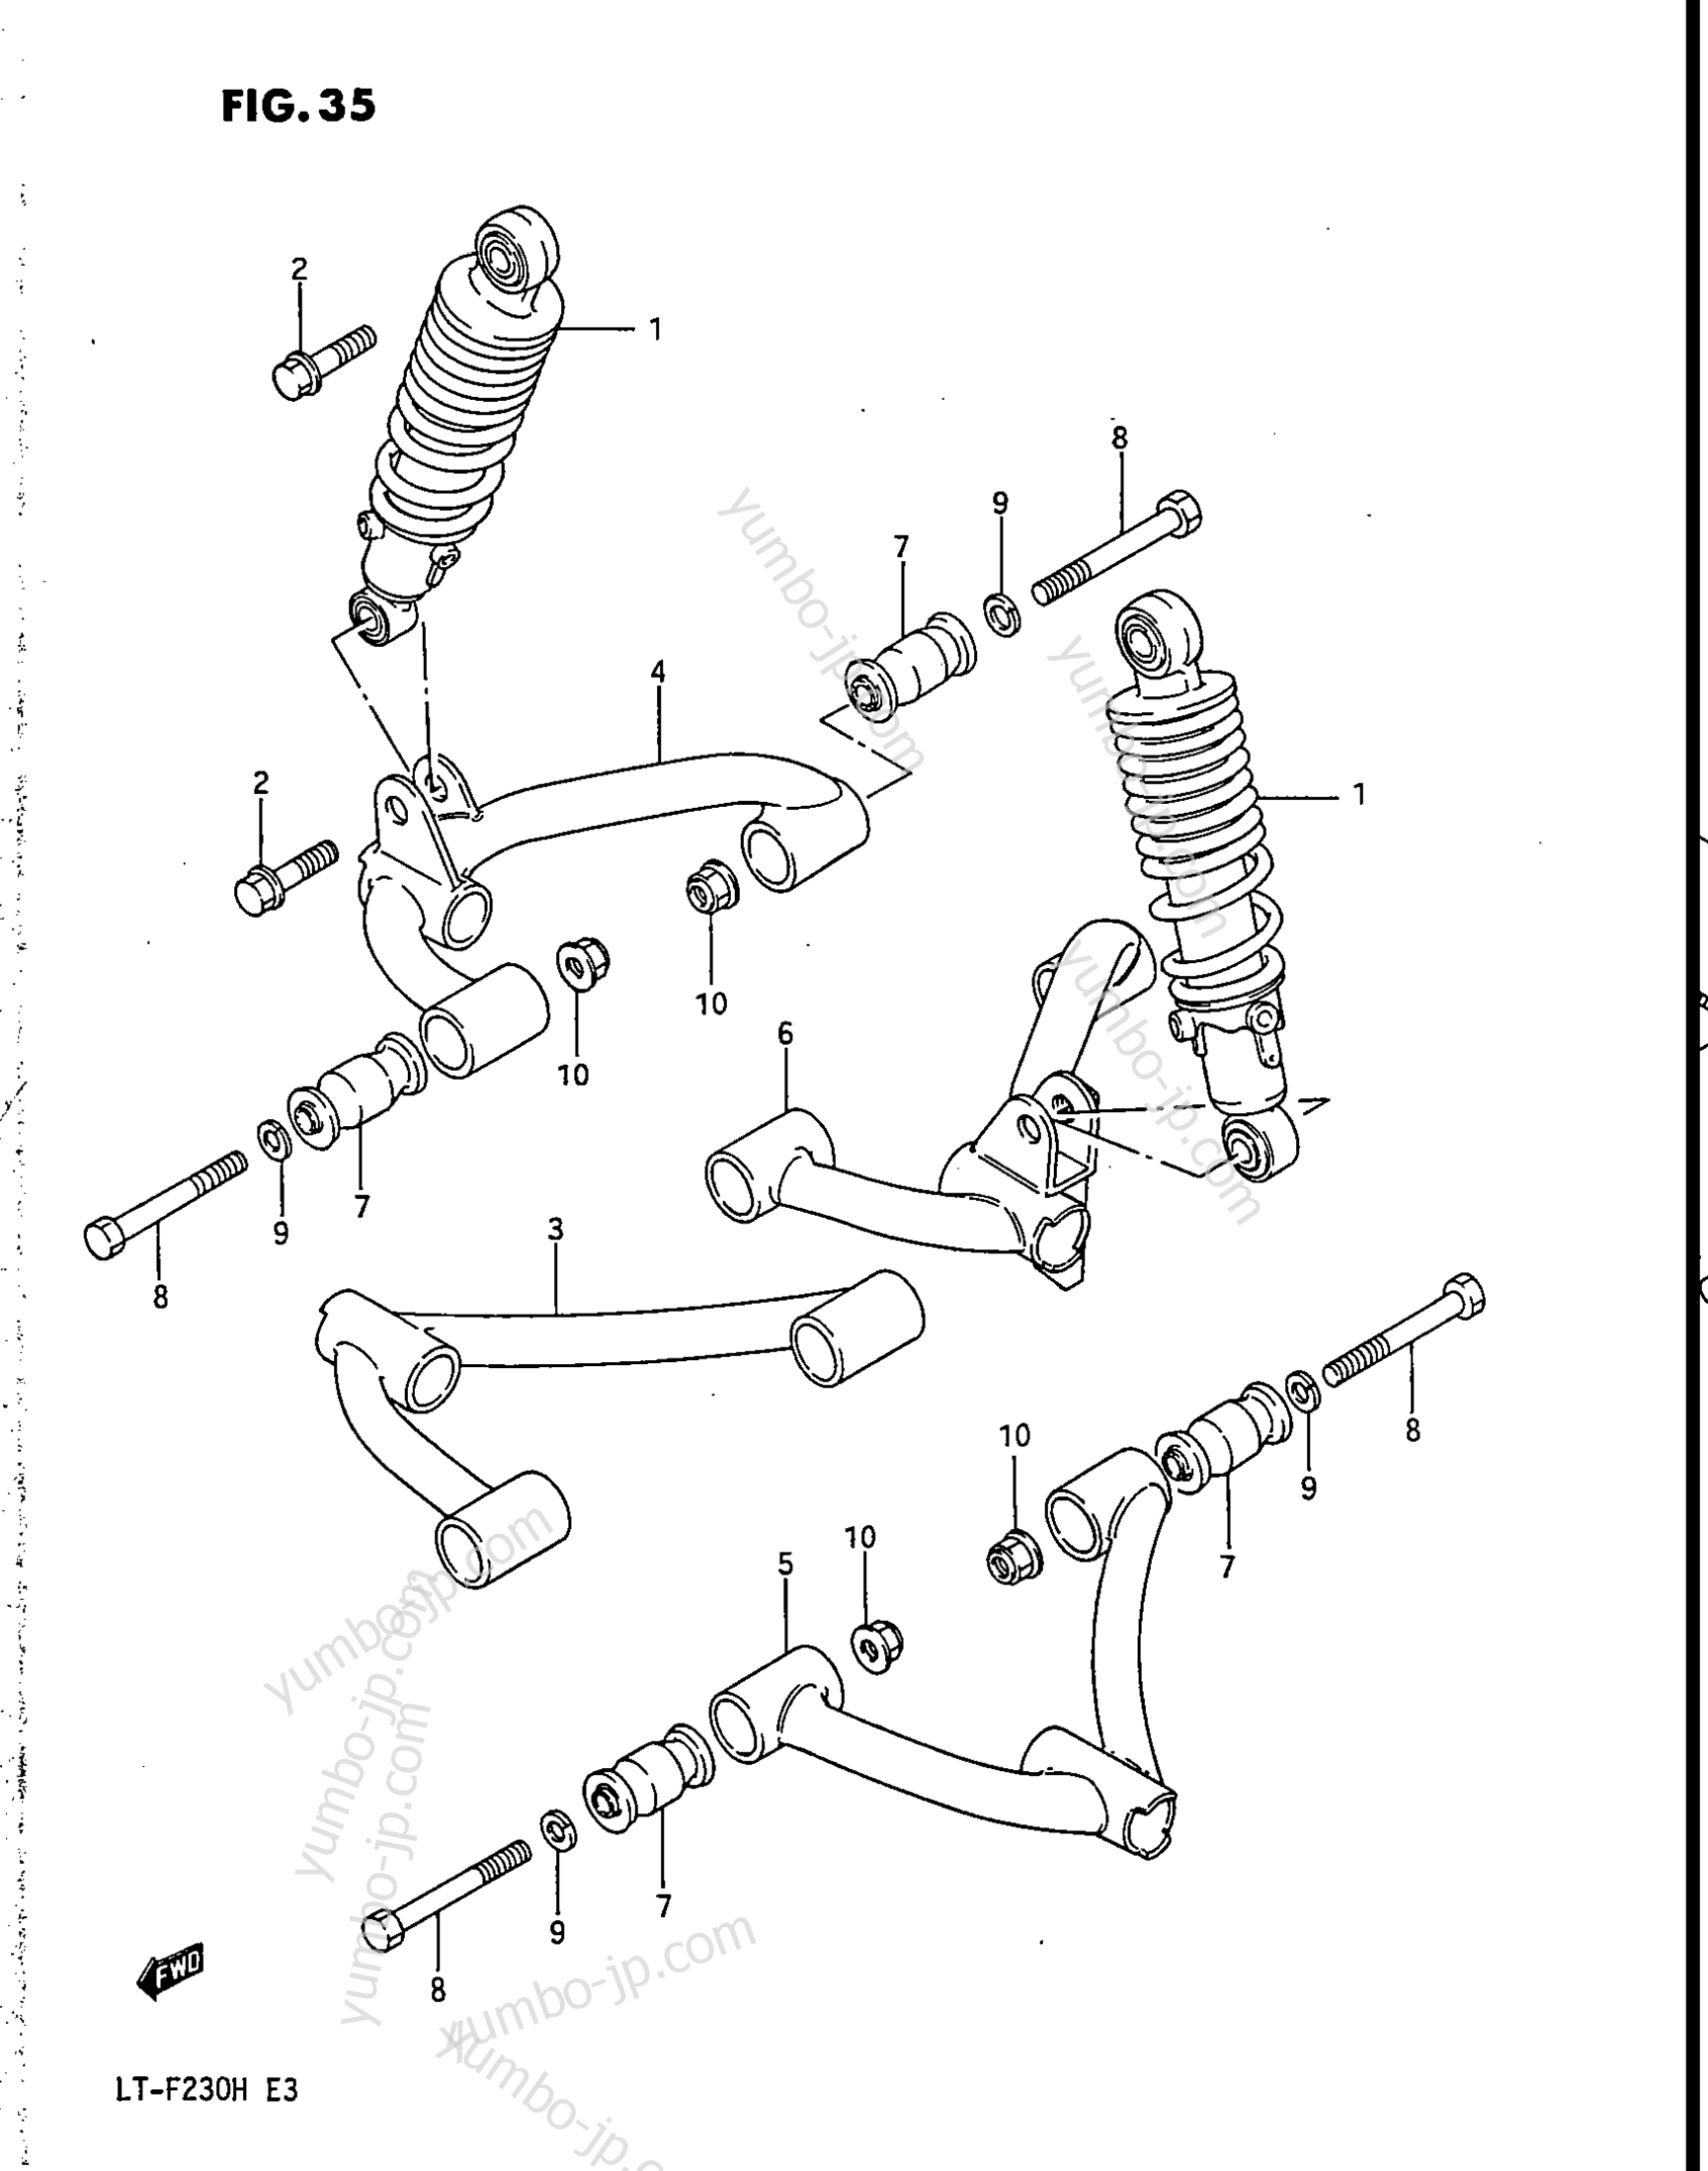 SUSPENSION ARM for ATVs SUZUKI LT-F230 1986 year